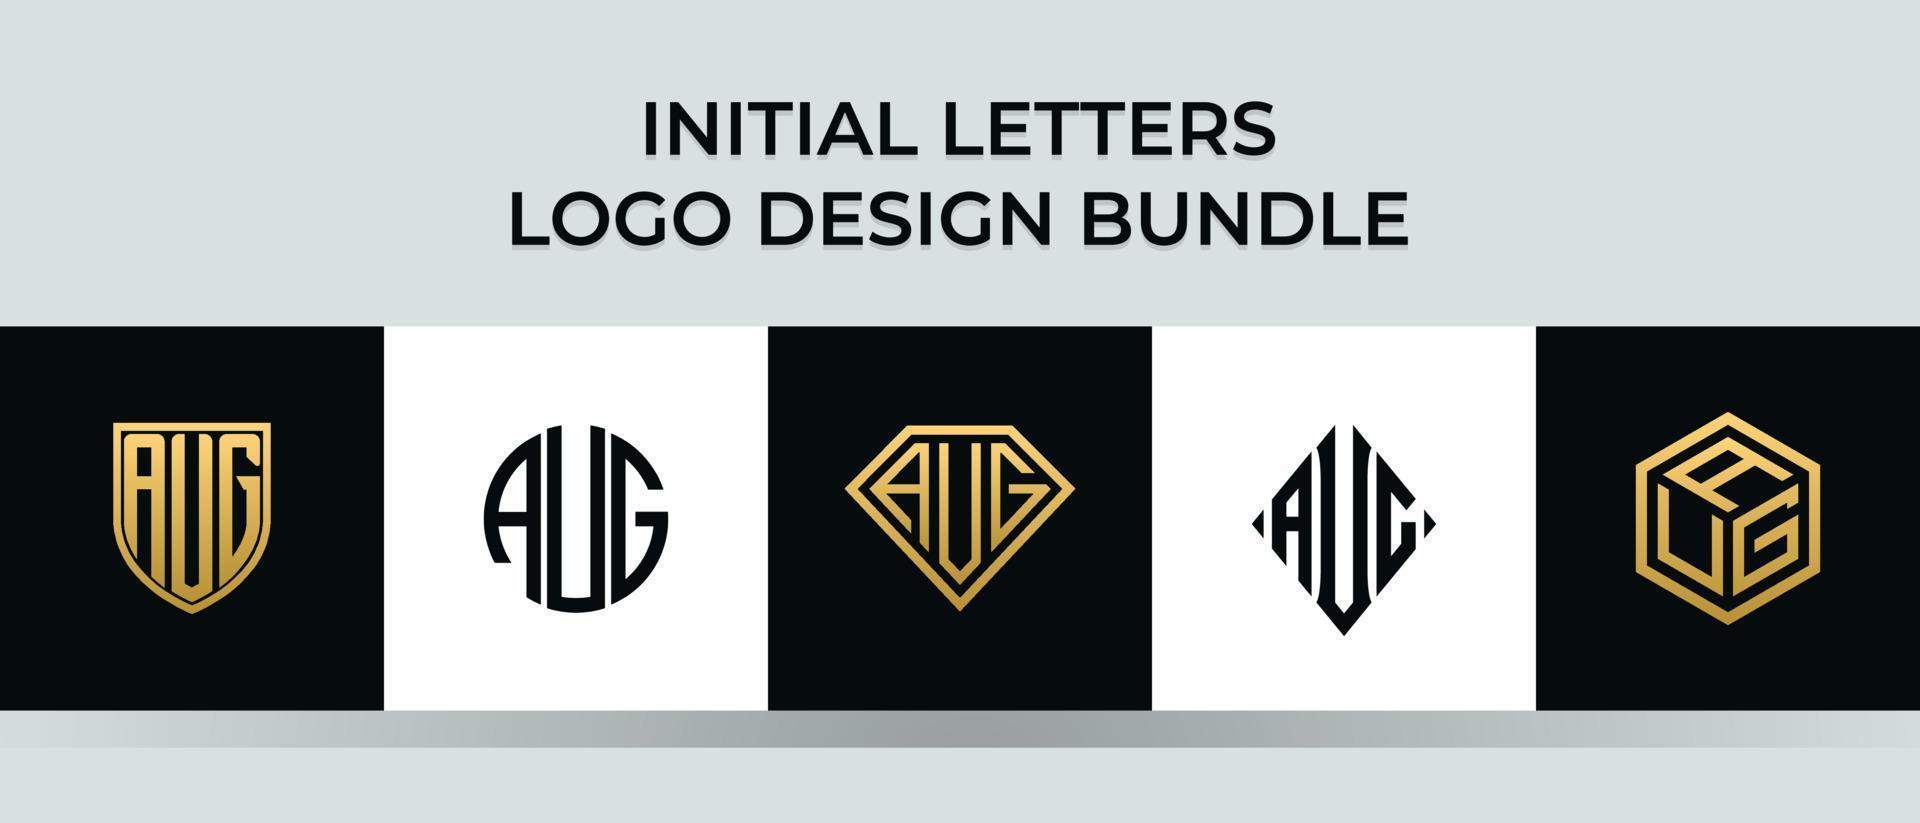 Initial letters AUG logo designs Bundle vector